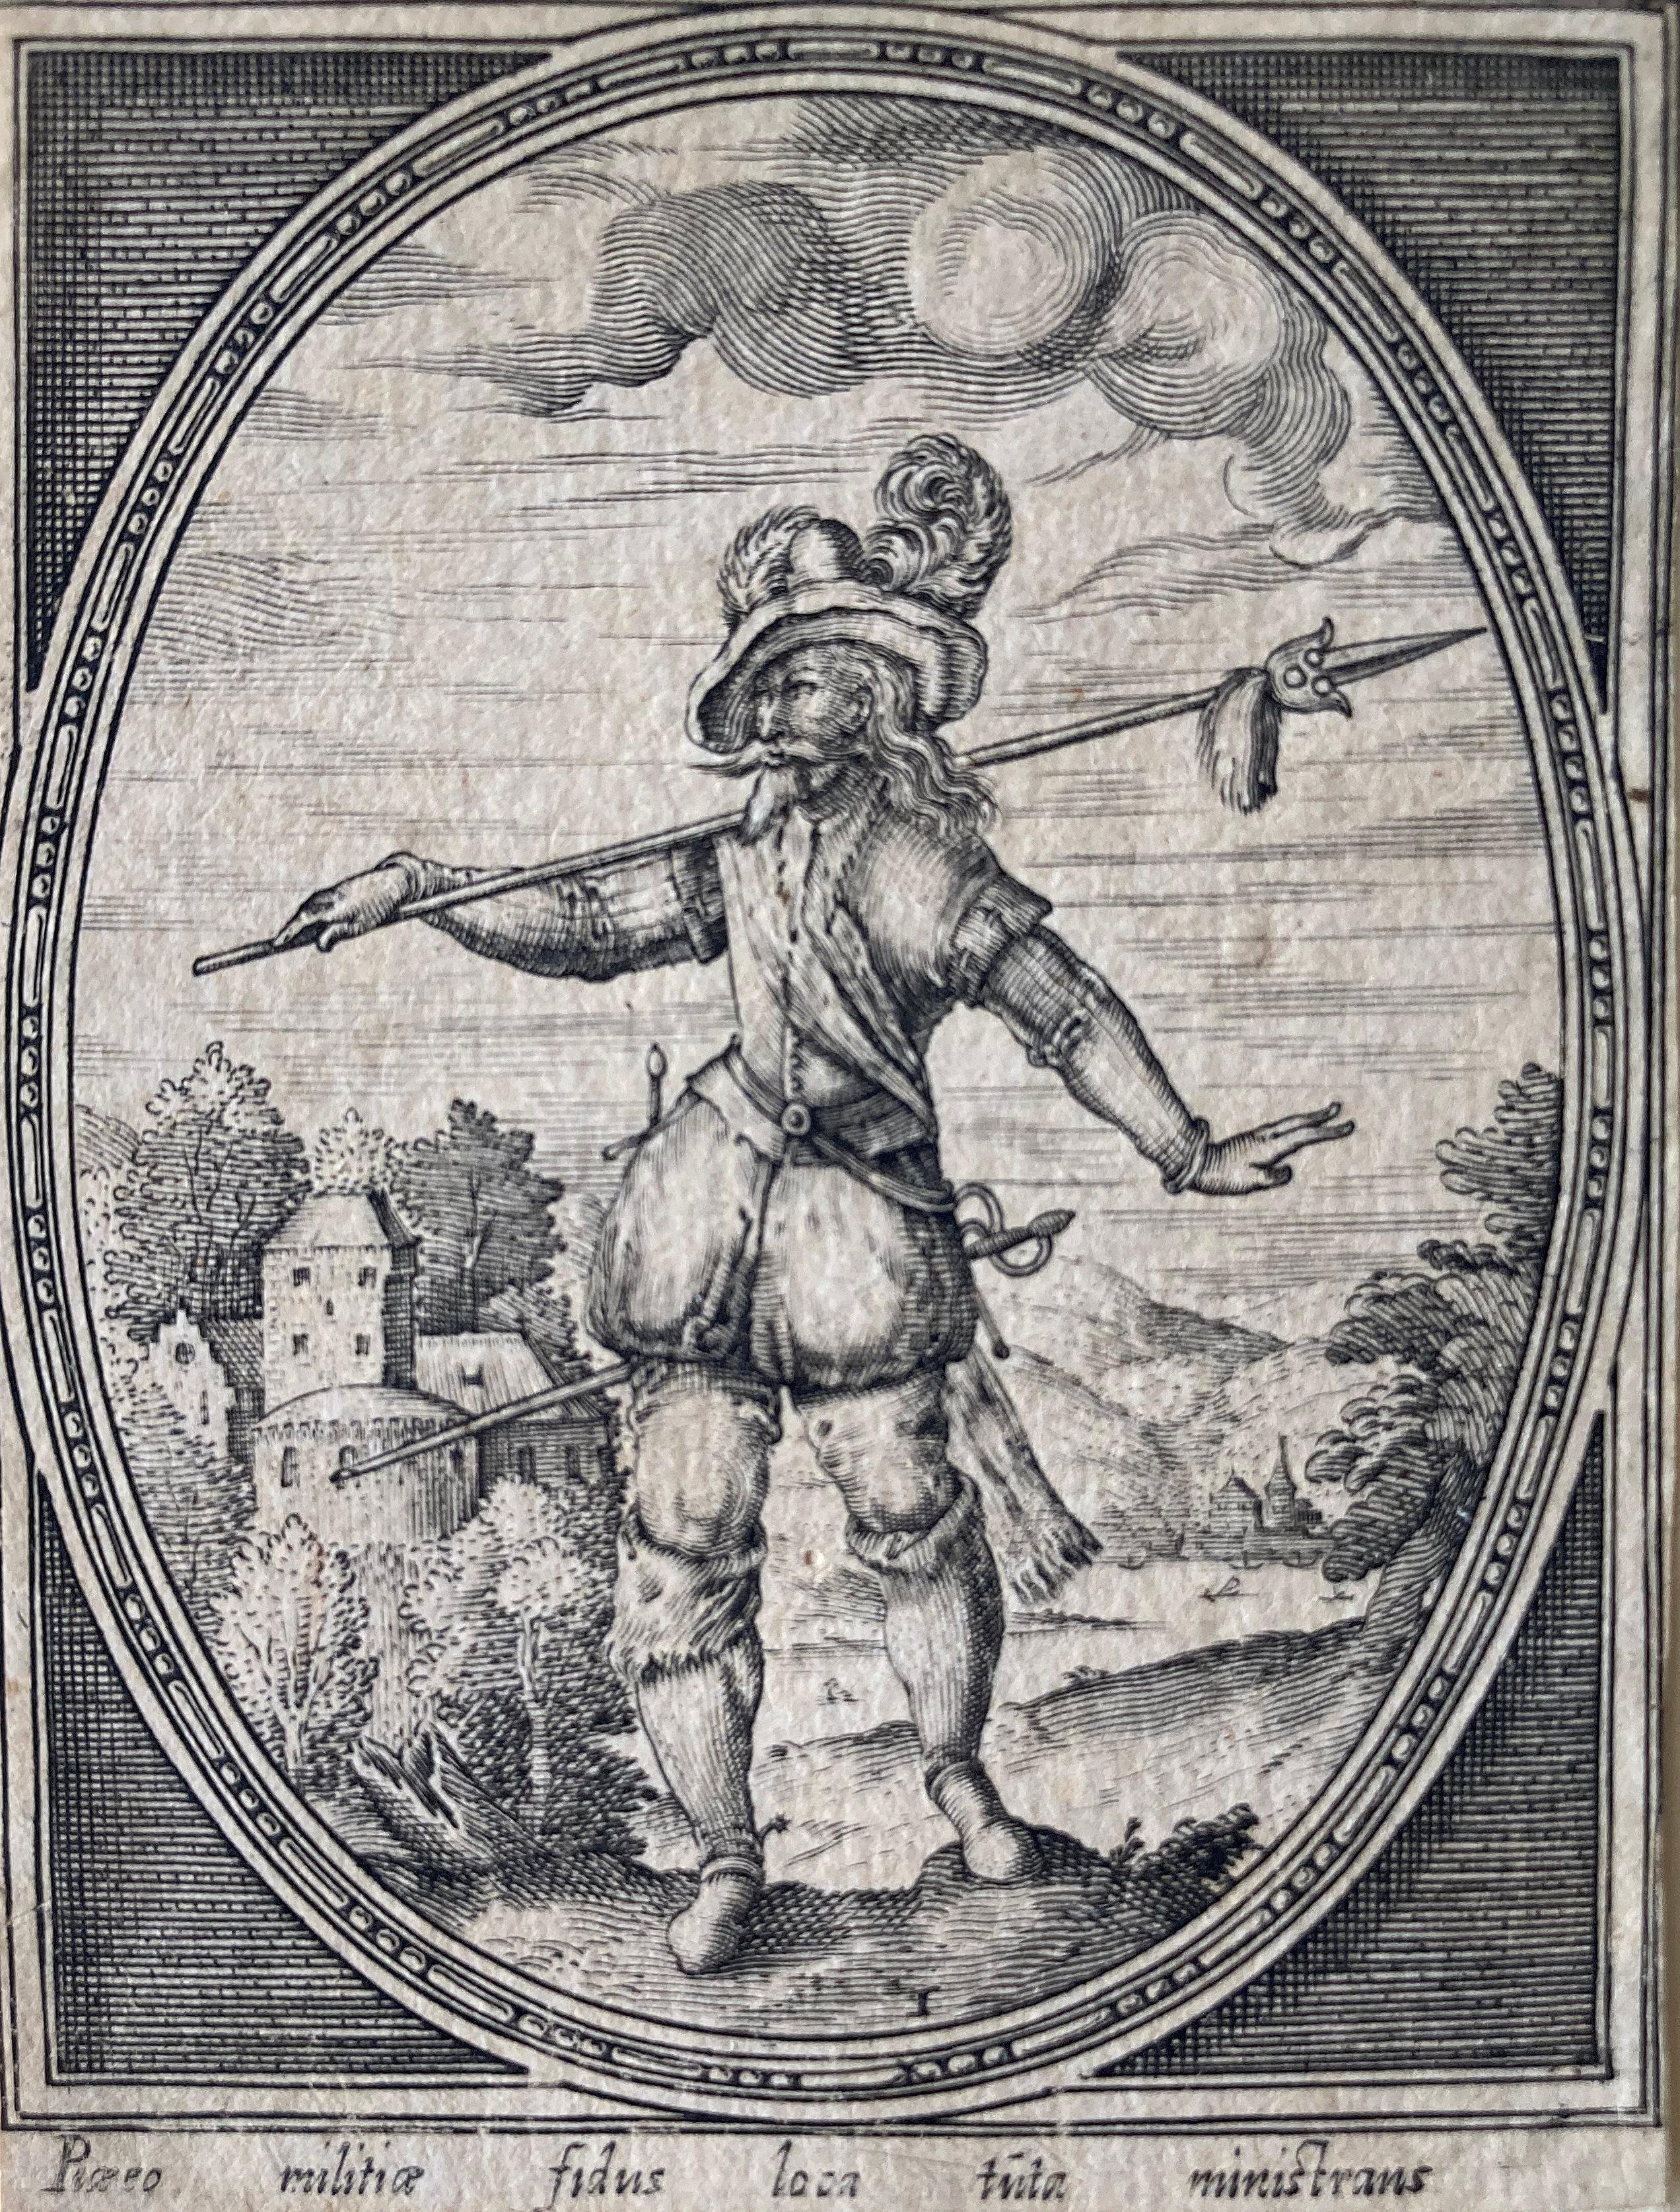 Heinrich Ulrich (alias Heinrich Ullrich) (fl.1567-1621)

"Soldat mit Hellebarde", 1598, aus der Serie "Die Garde des Kaisers Rudolph" (auch "Altdeutsche Soldaten"; "Suite der Krieger"; "Retinue der Krieger"), herausgegeben von Heinrich Ulrich in